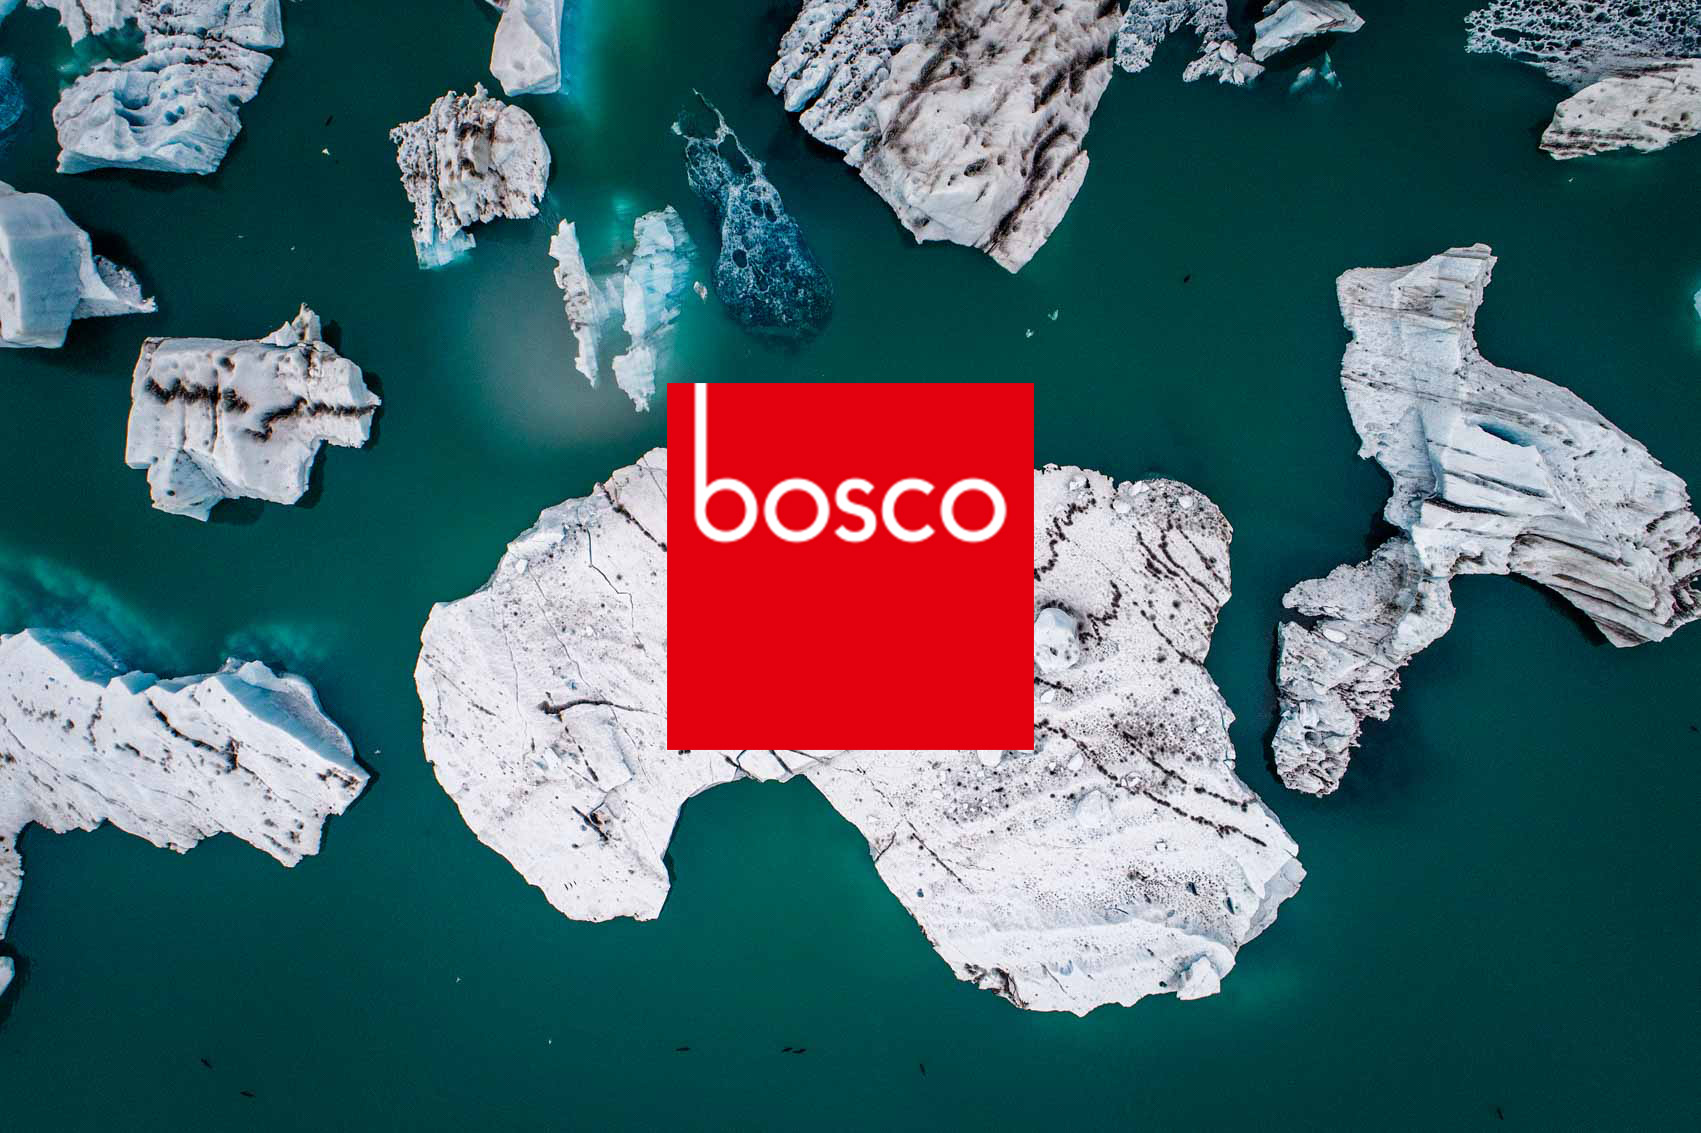 Ausstellung Bosco Gauting Oktober 2020